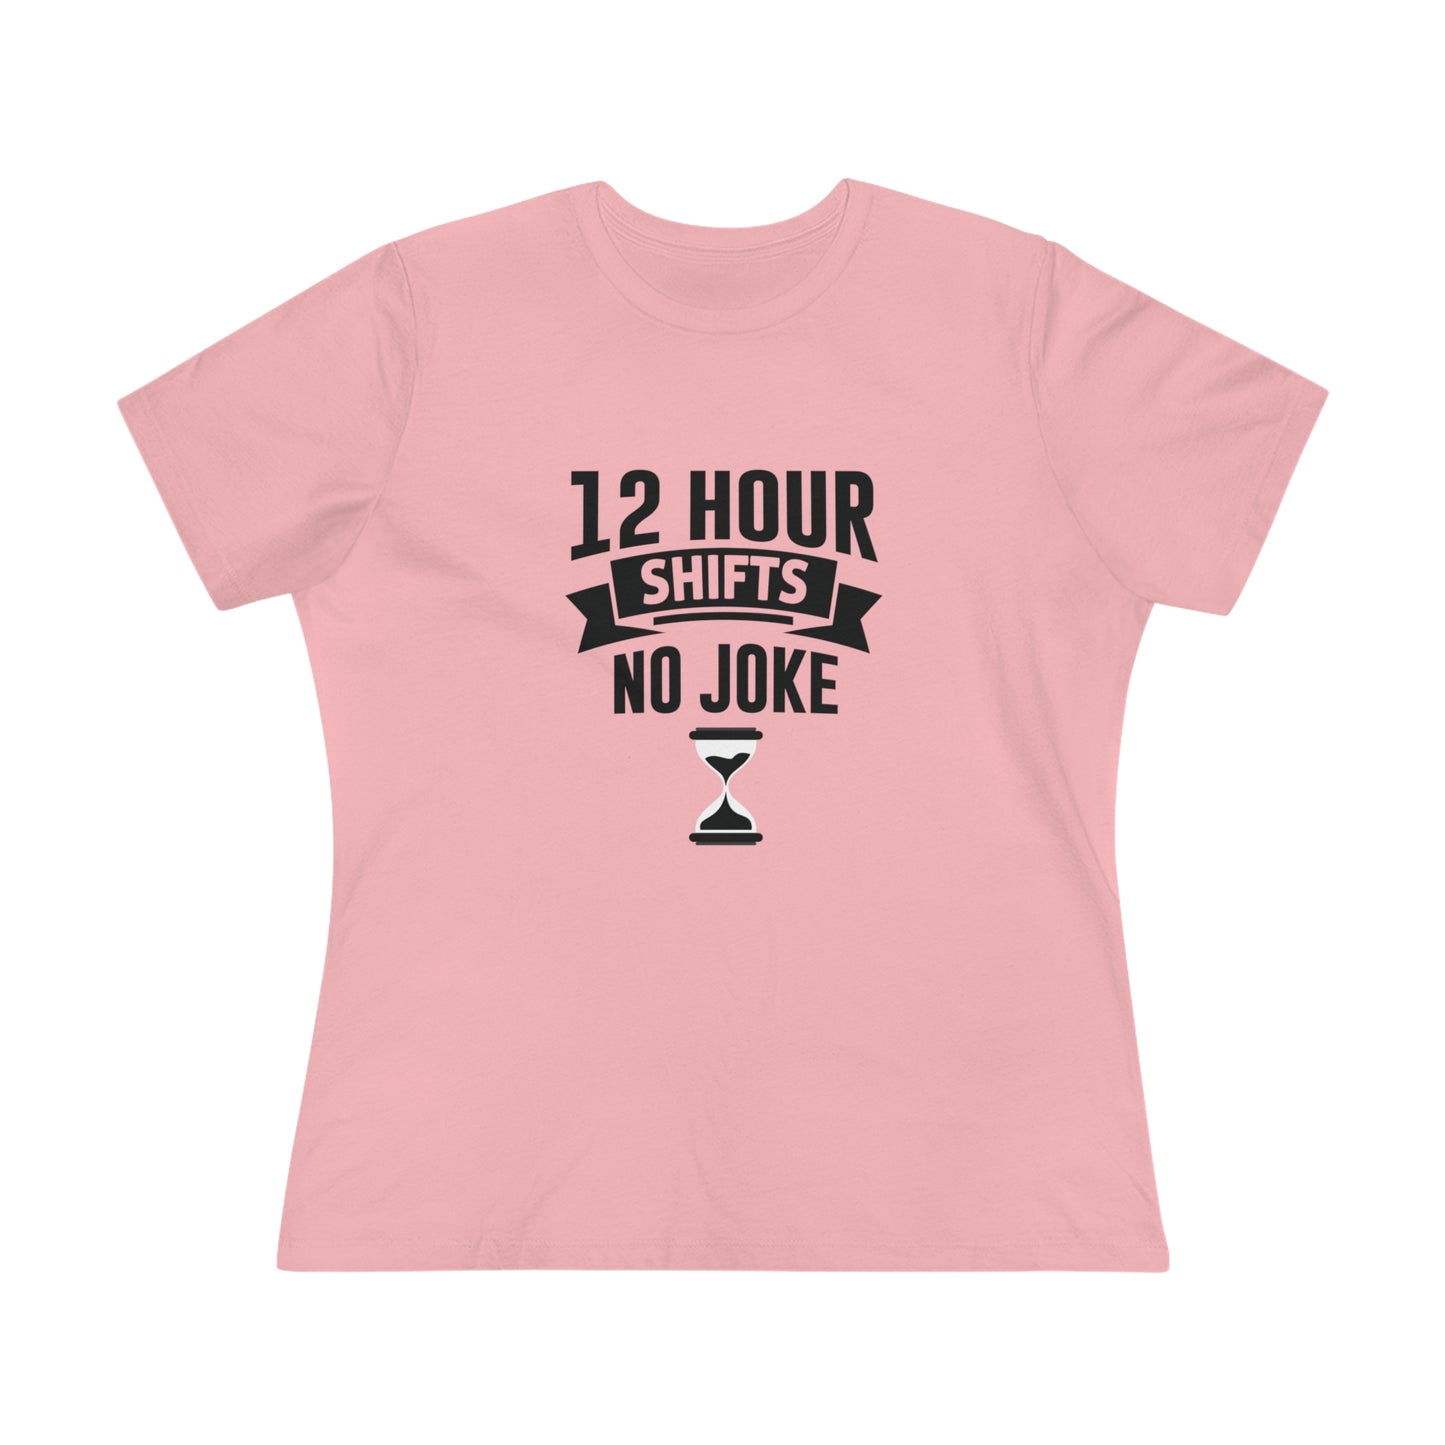 12 Hour Shifts No Joke Women's Premium Tee, Doctor shirts, Doctor gift ideas, New Doctor shirt, doctors gift, women shirt with doctor design